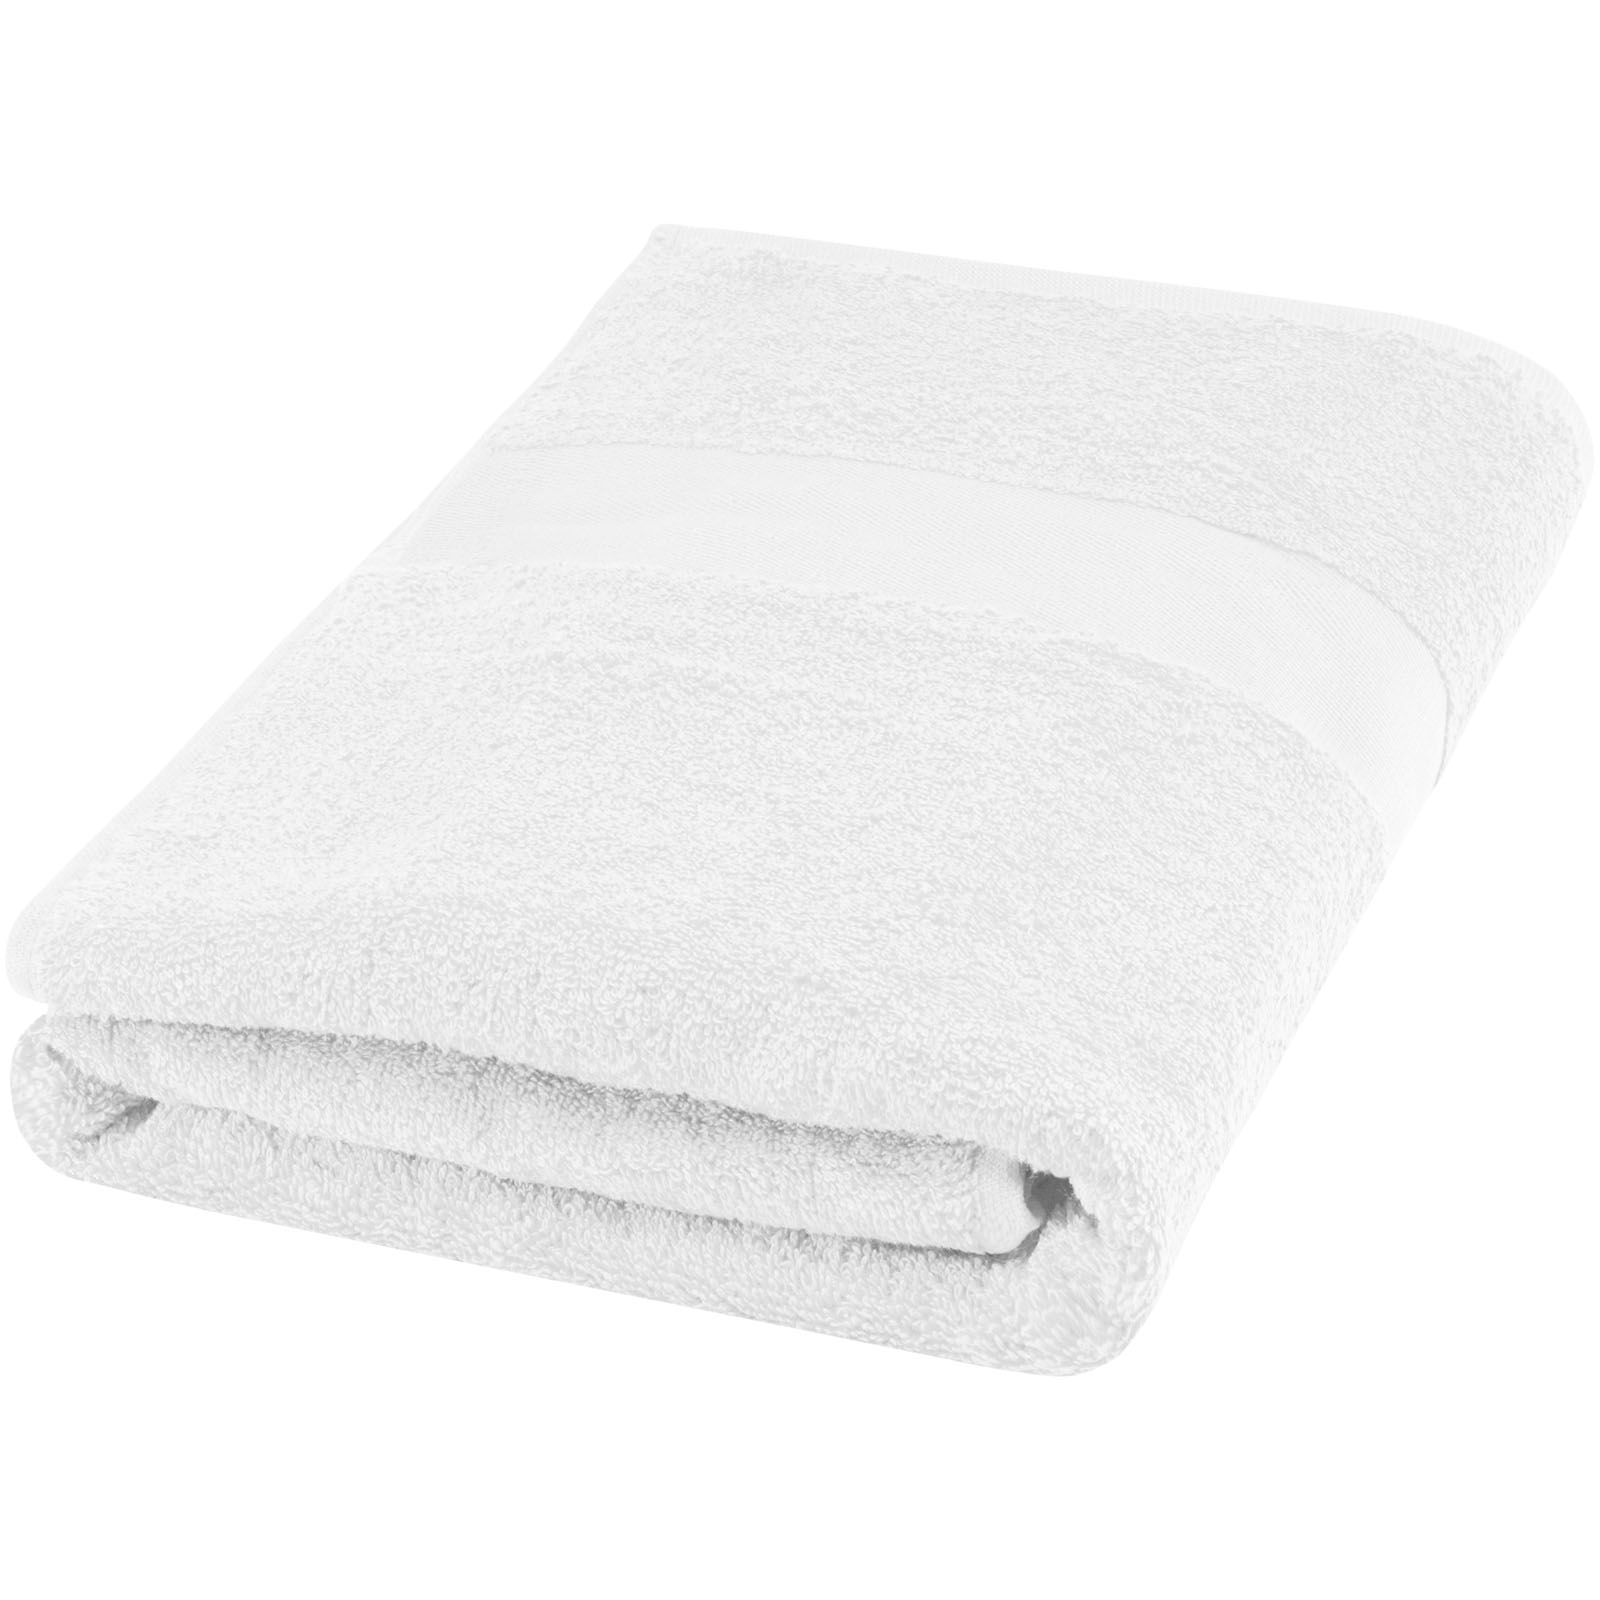 Advertising Towels - Amelia 450 g/m² cotton towel 70x140 cm